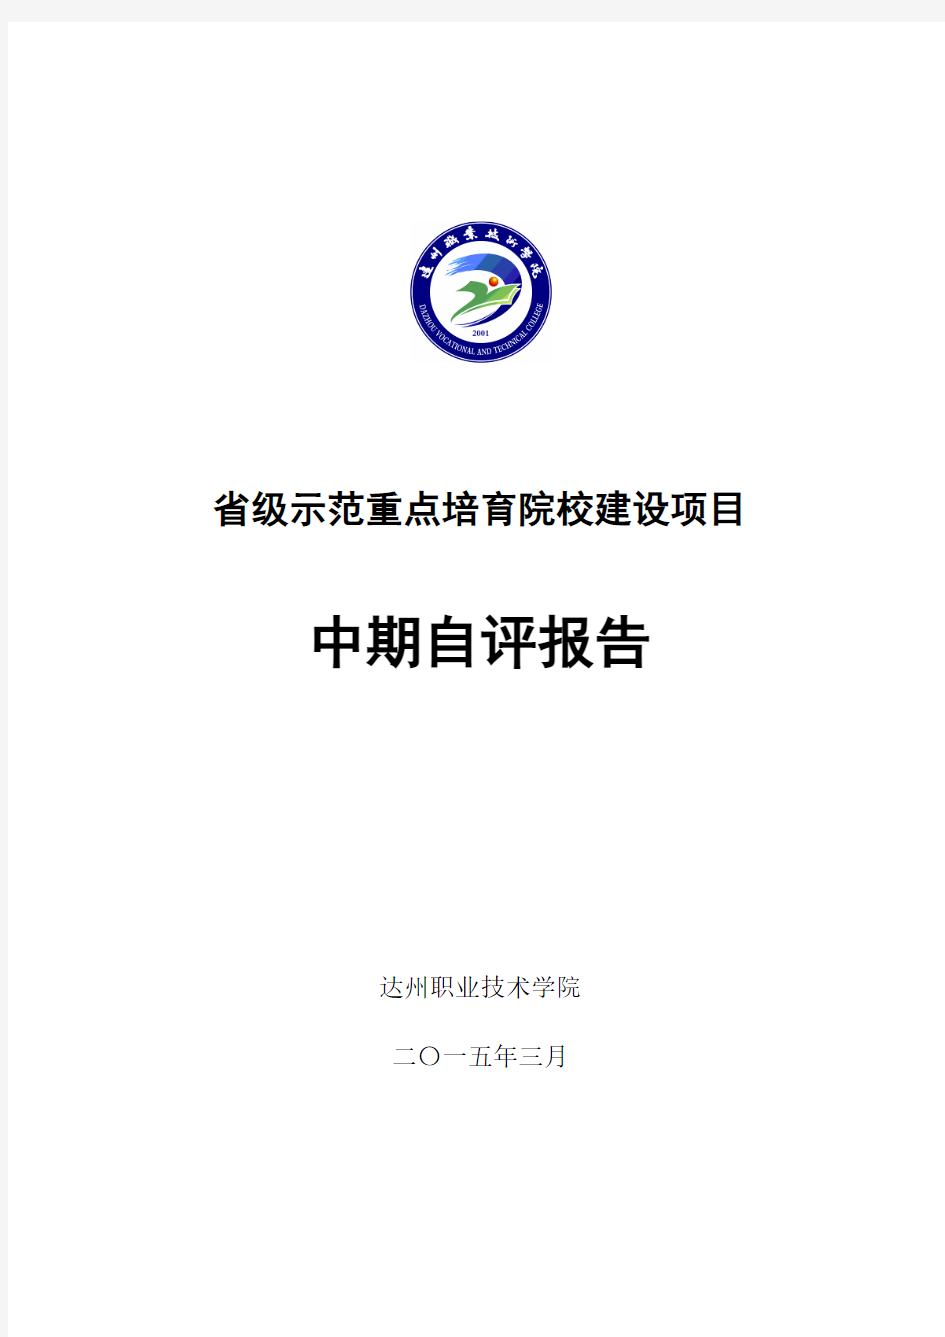 xx职业技术学院省示范中期检查自评报告(2015.4 定稿)